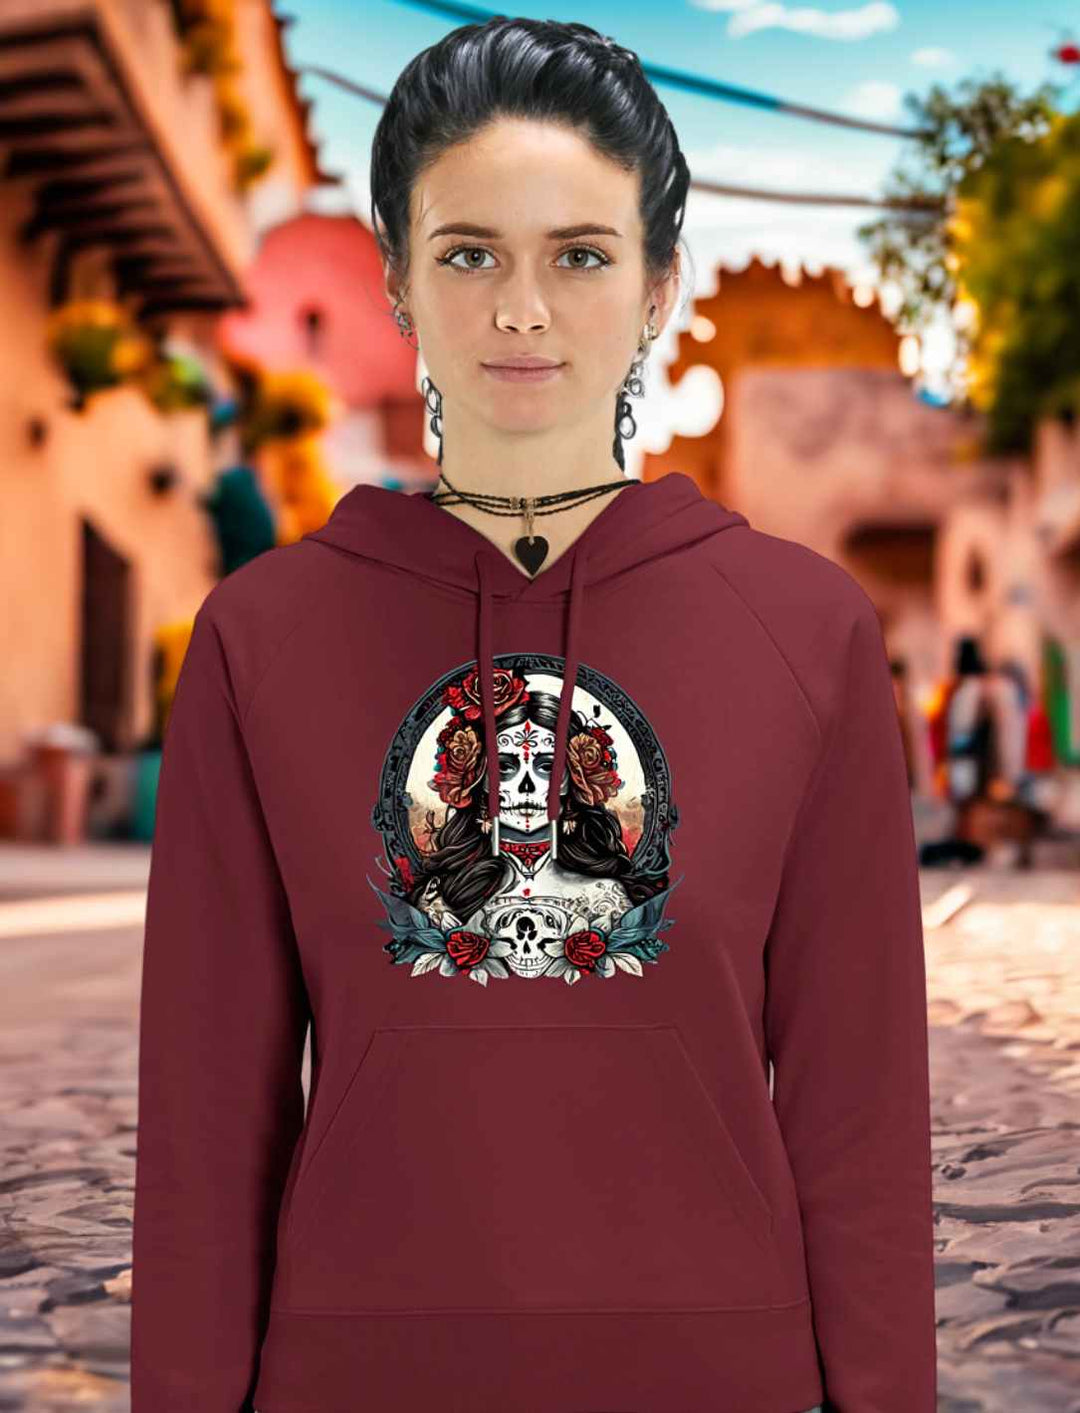 Junge Frau trägt La Catrina Organic Damen Hoodie in Burgund, stehend auf einer charakteristischen mexikanischen Straße am Día de los Muertos – Runental.de.